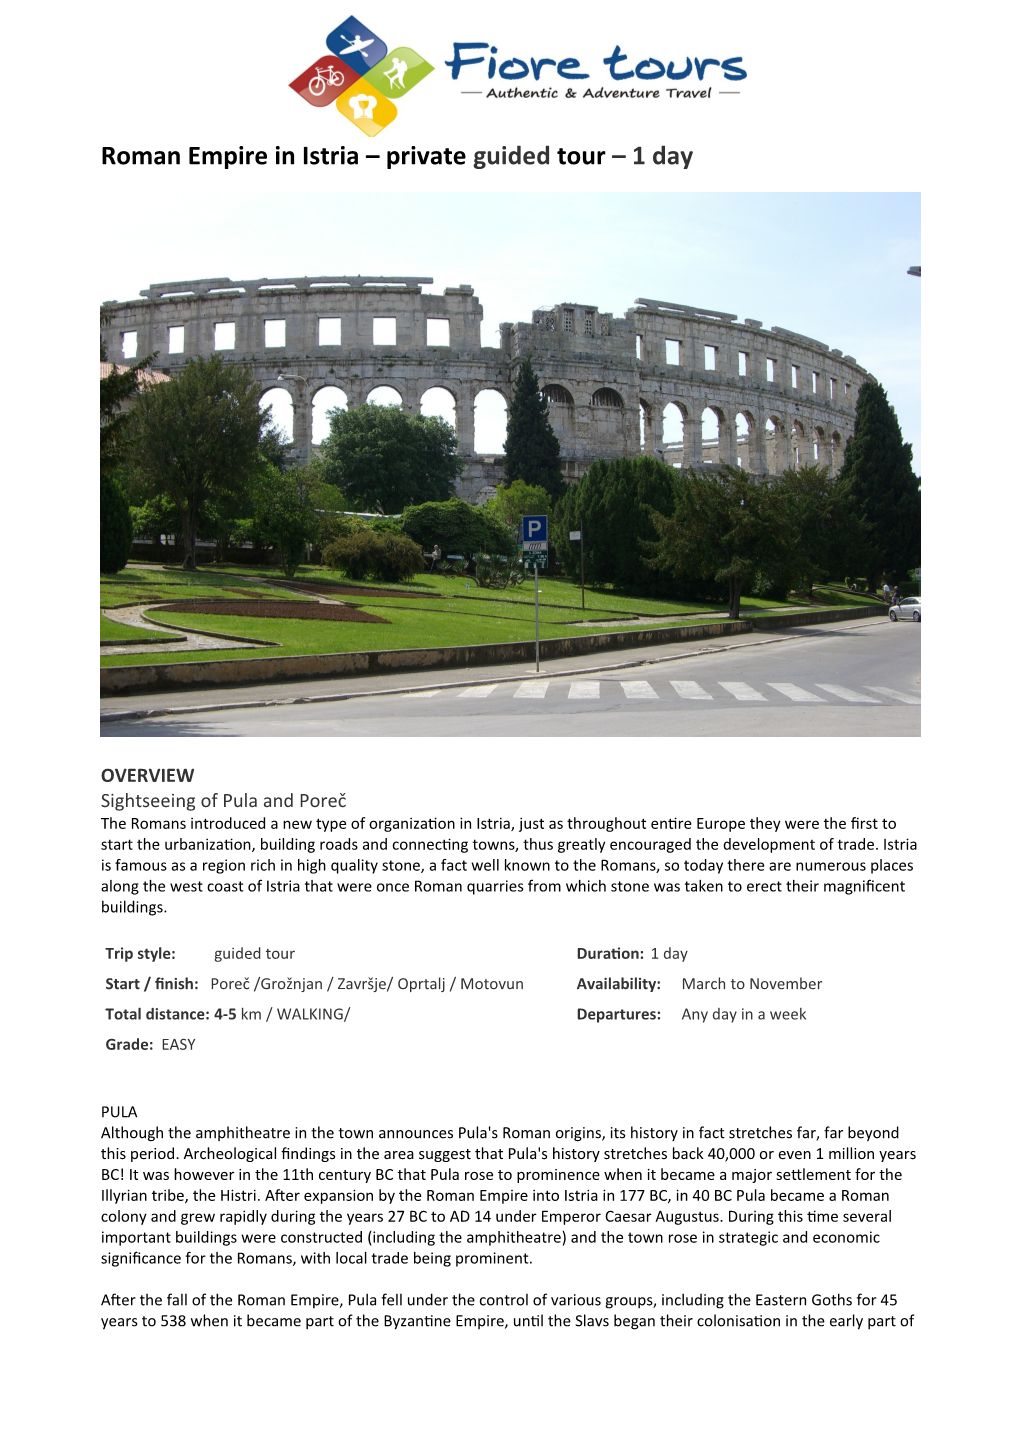 Roman Empire in Istria – Private Guided Tour – 1 Day